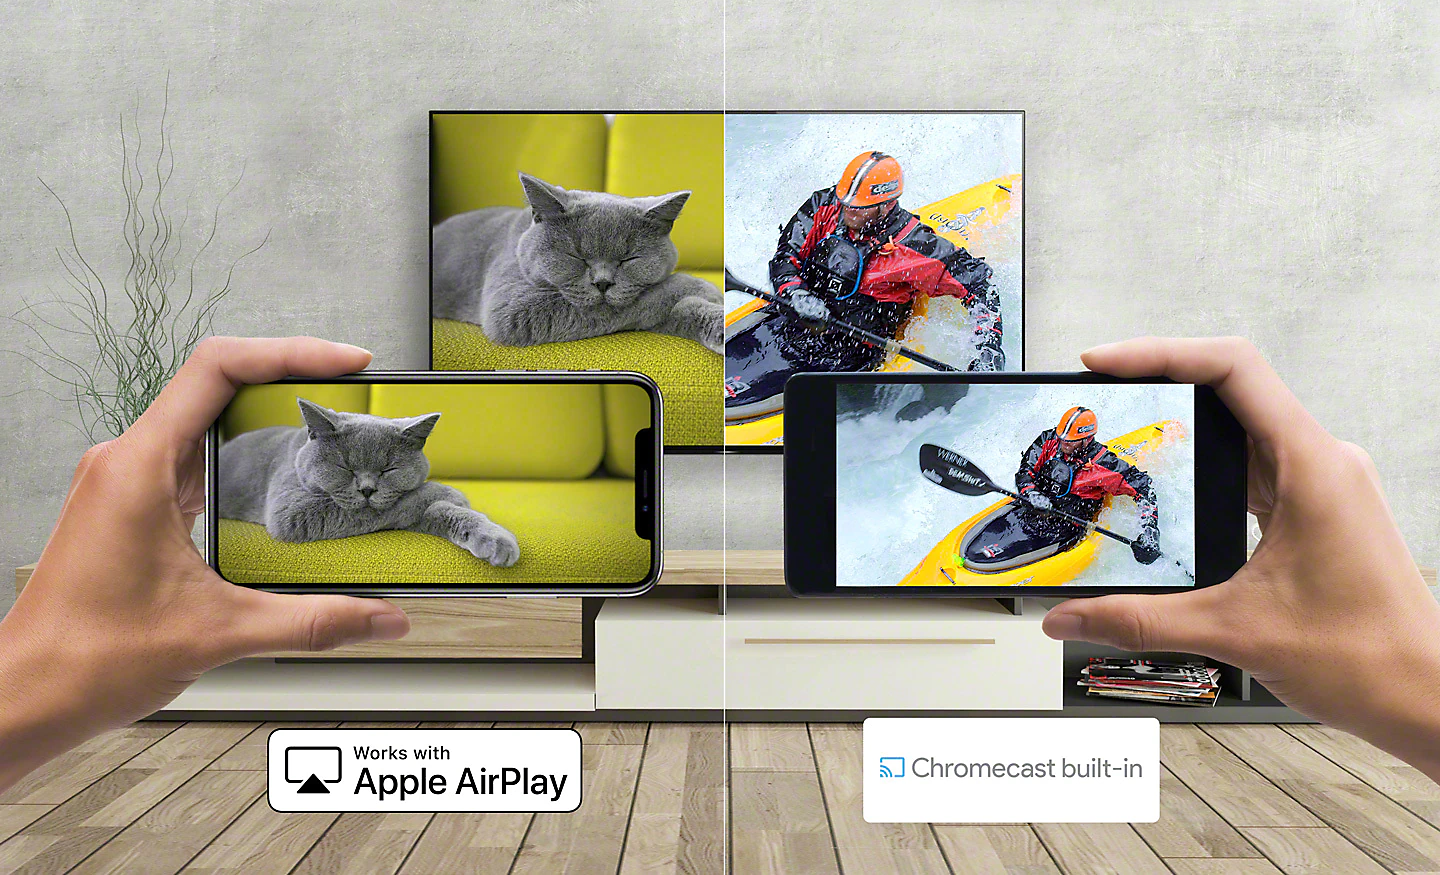 Slike pretakanja mačke in kanuista iz pametnega telefona v televizor